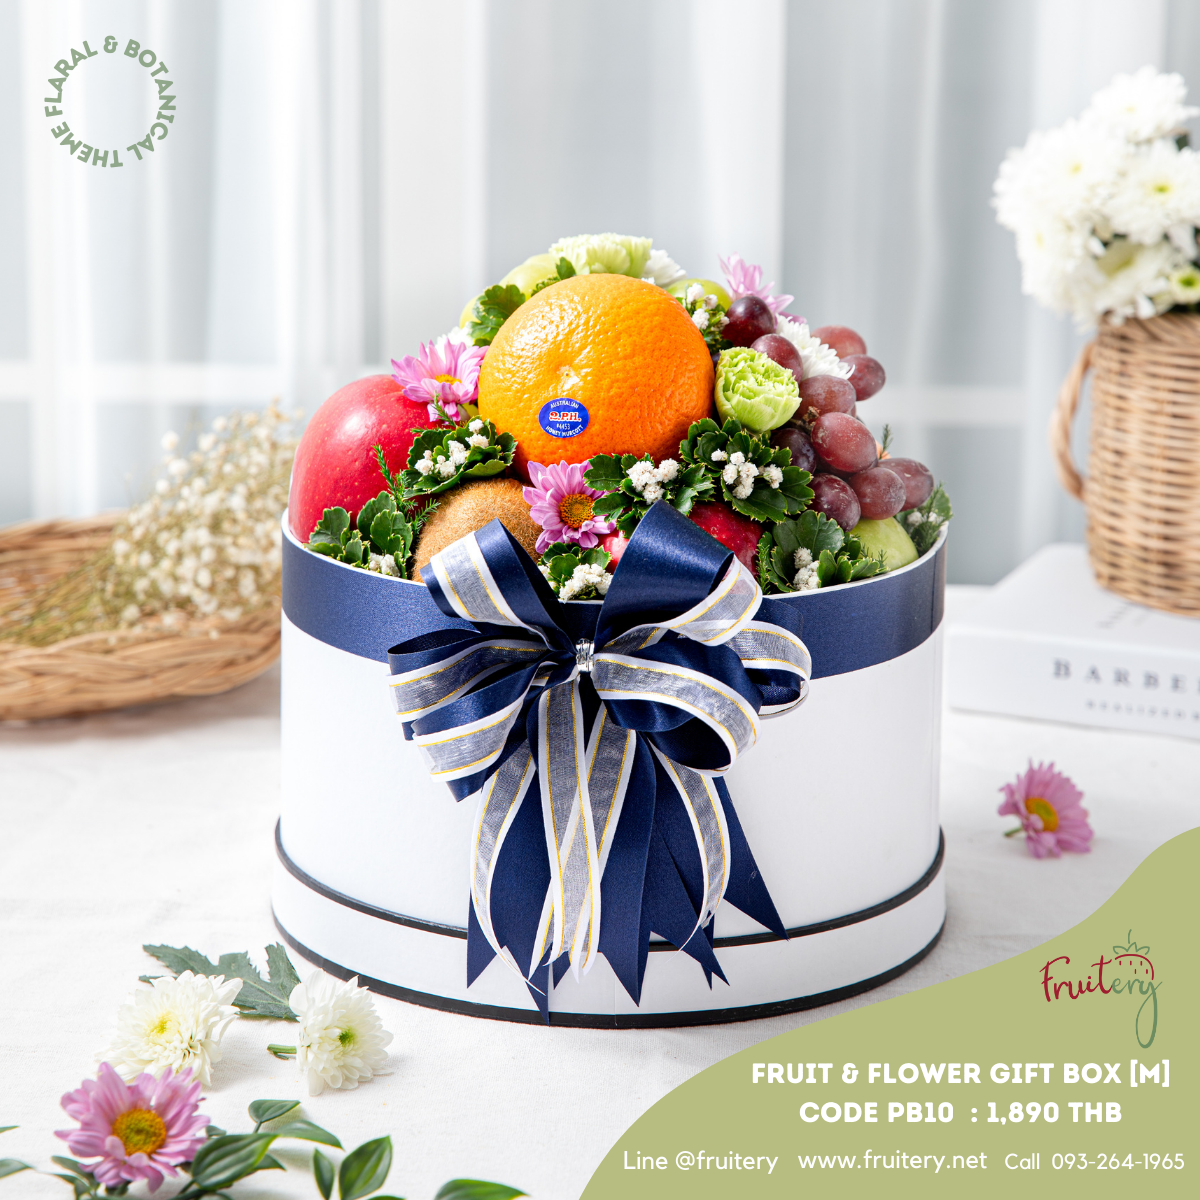 PB10 Fruit & Flower Gift Box